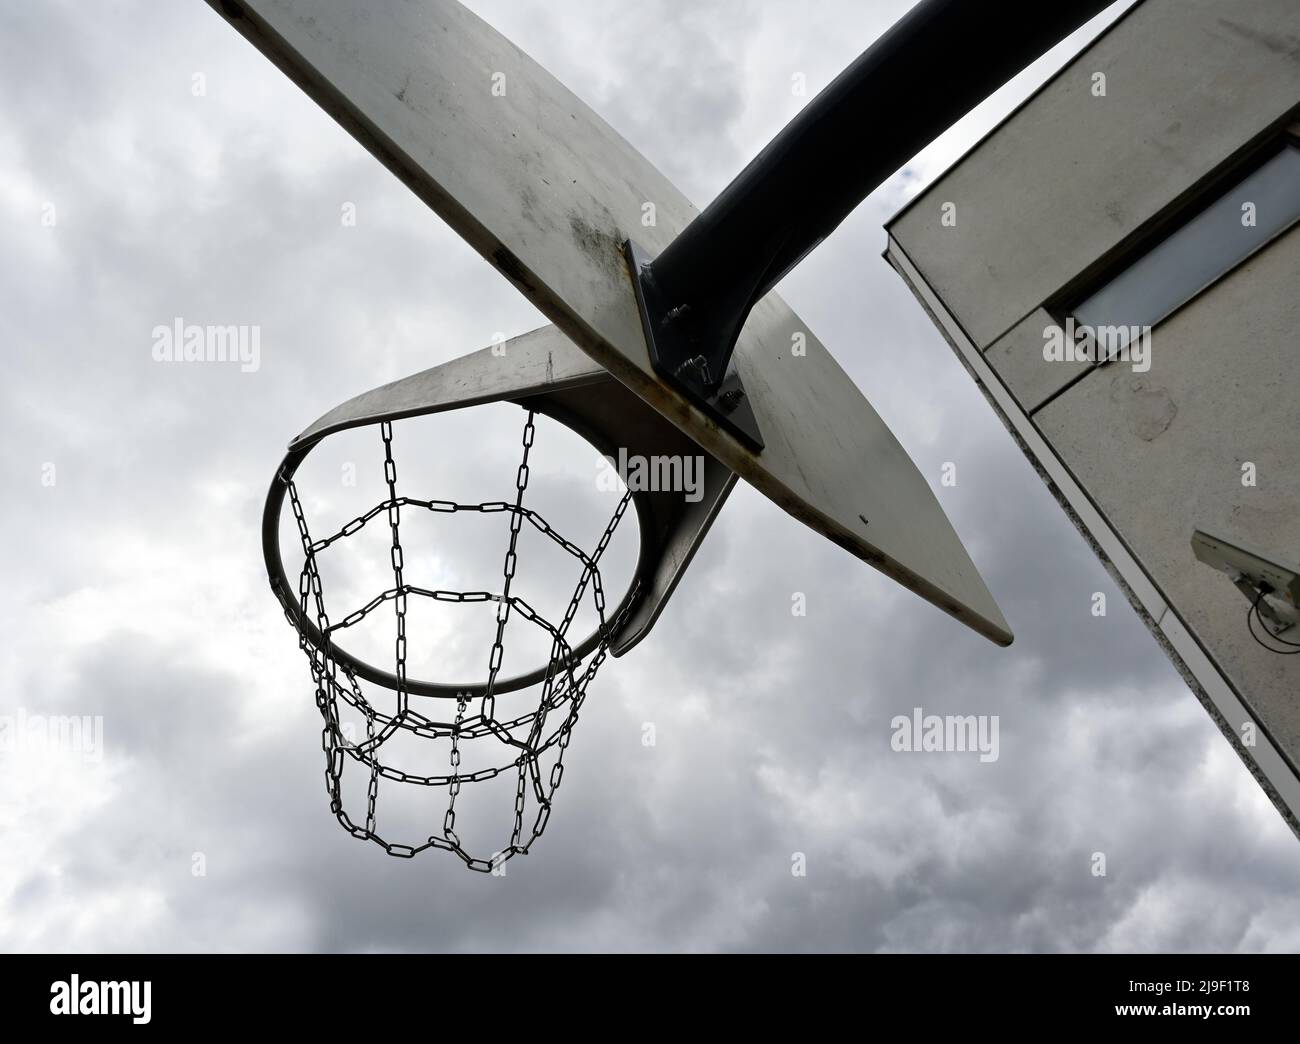 un aro de baloncesto antivandálico con cadenas de hierro contra un cielo nublado sombrío, al lado de un edificio de hormigón con una cámara de vigilancia en la pared Foto de stock